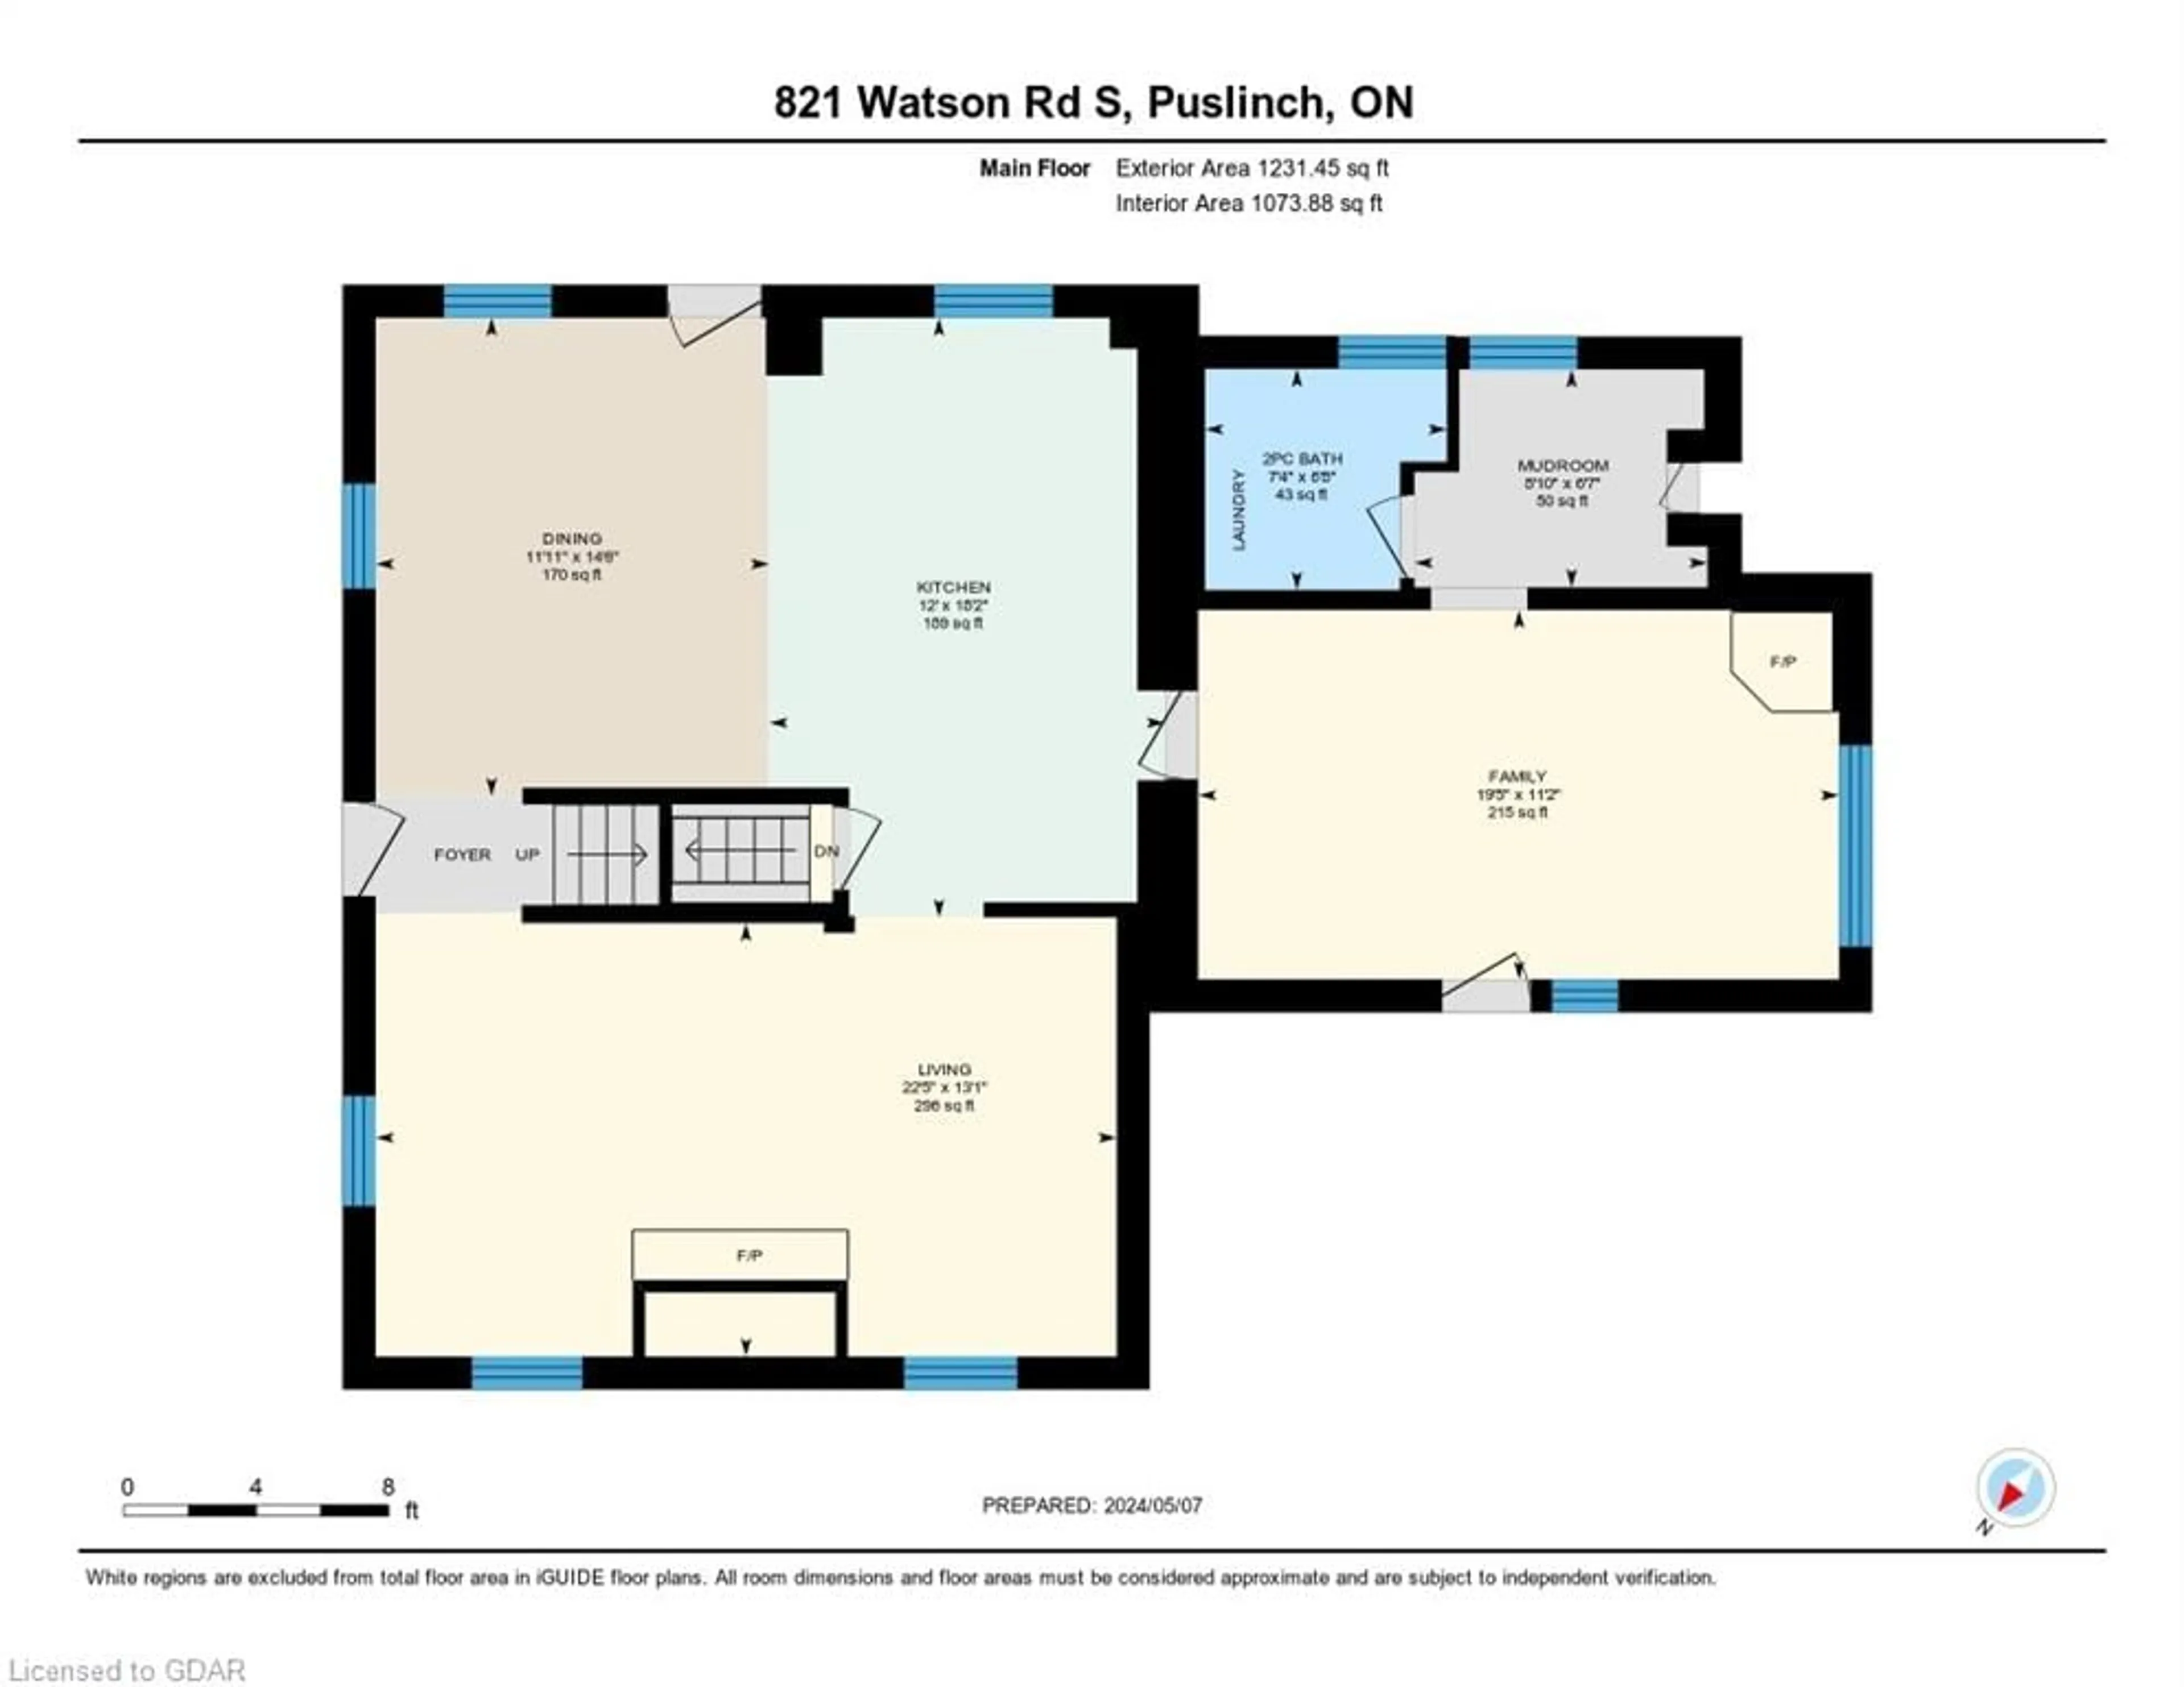 Floor plan for 821 Watson Rd, Puslinch Ontario N0B 1C0